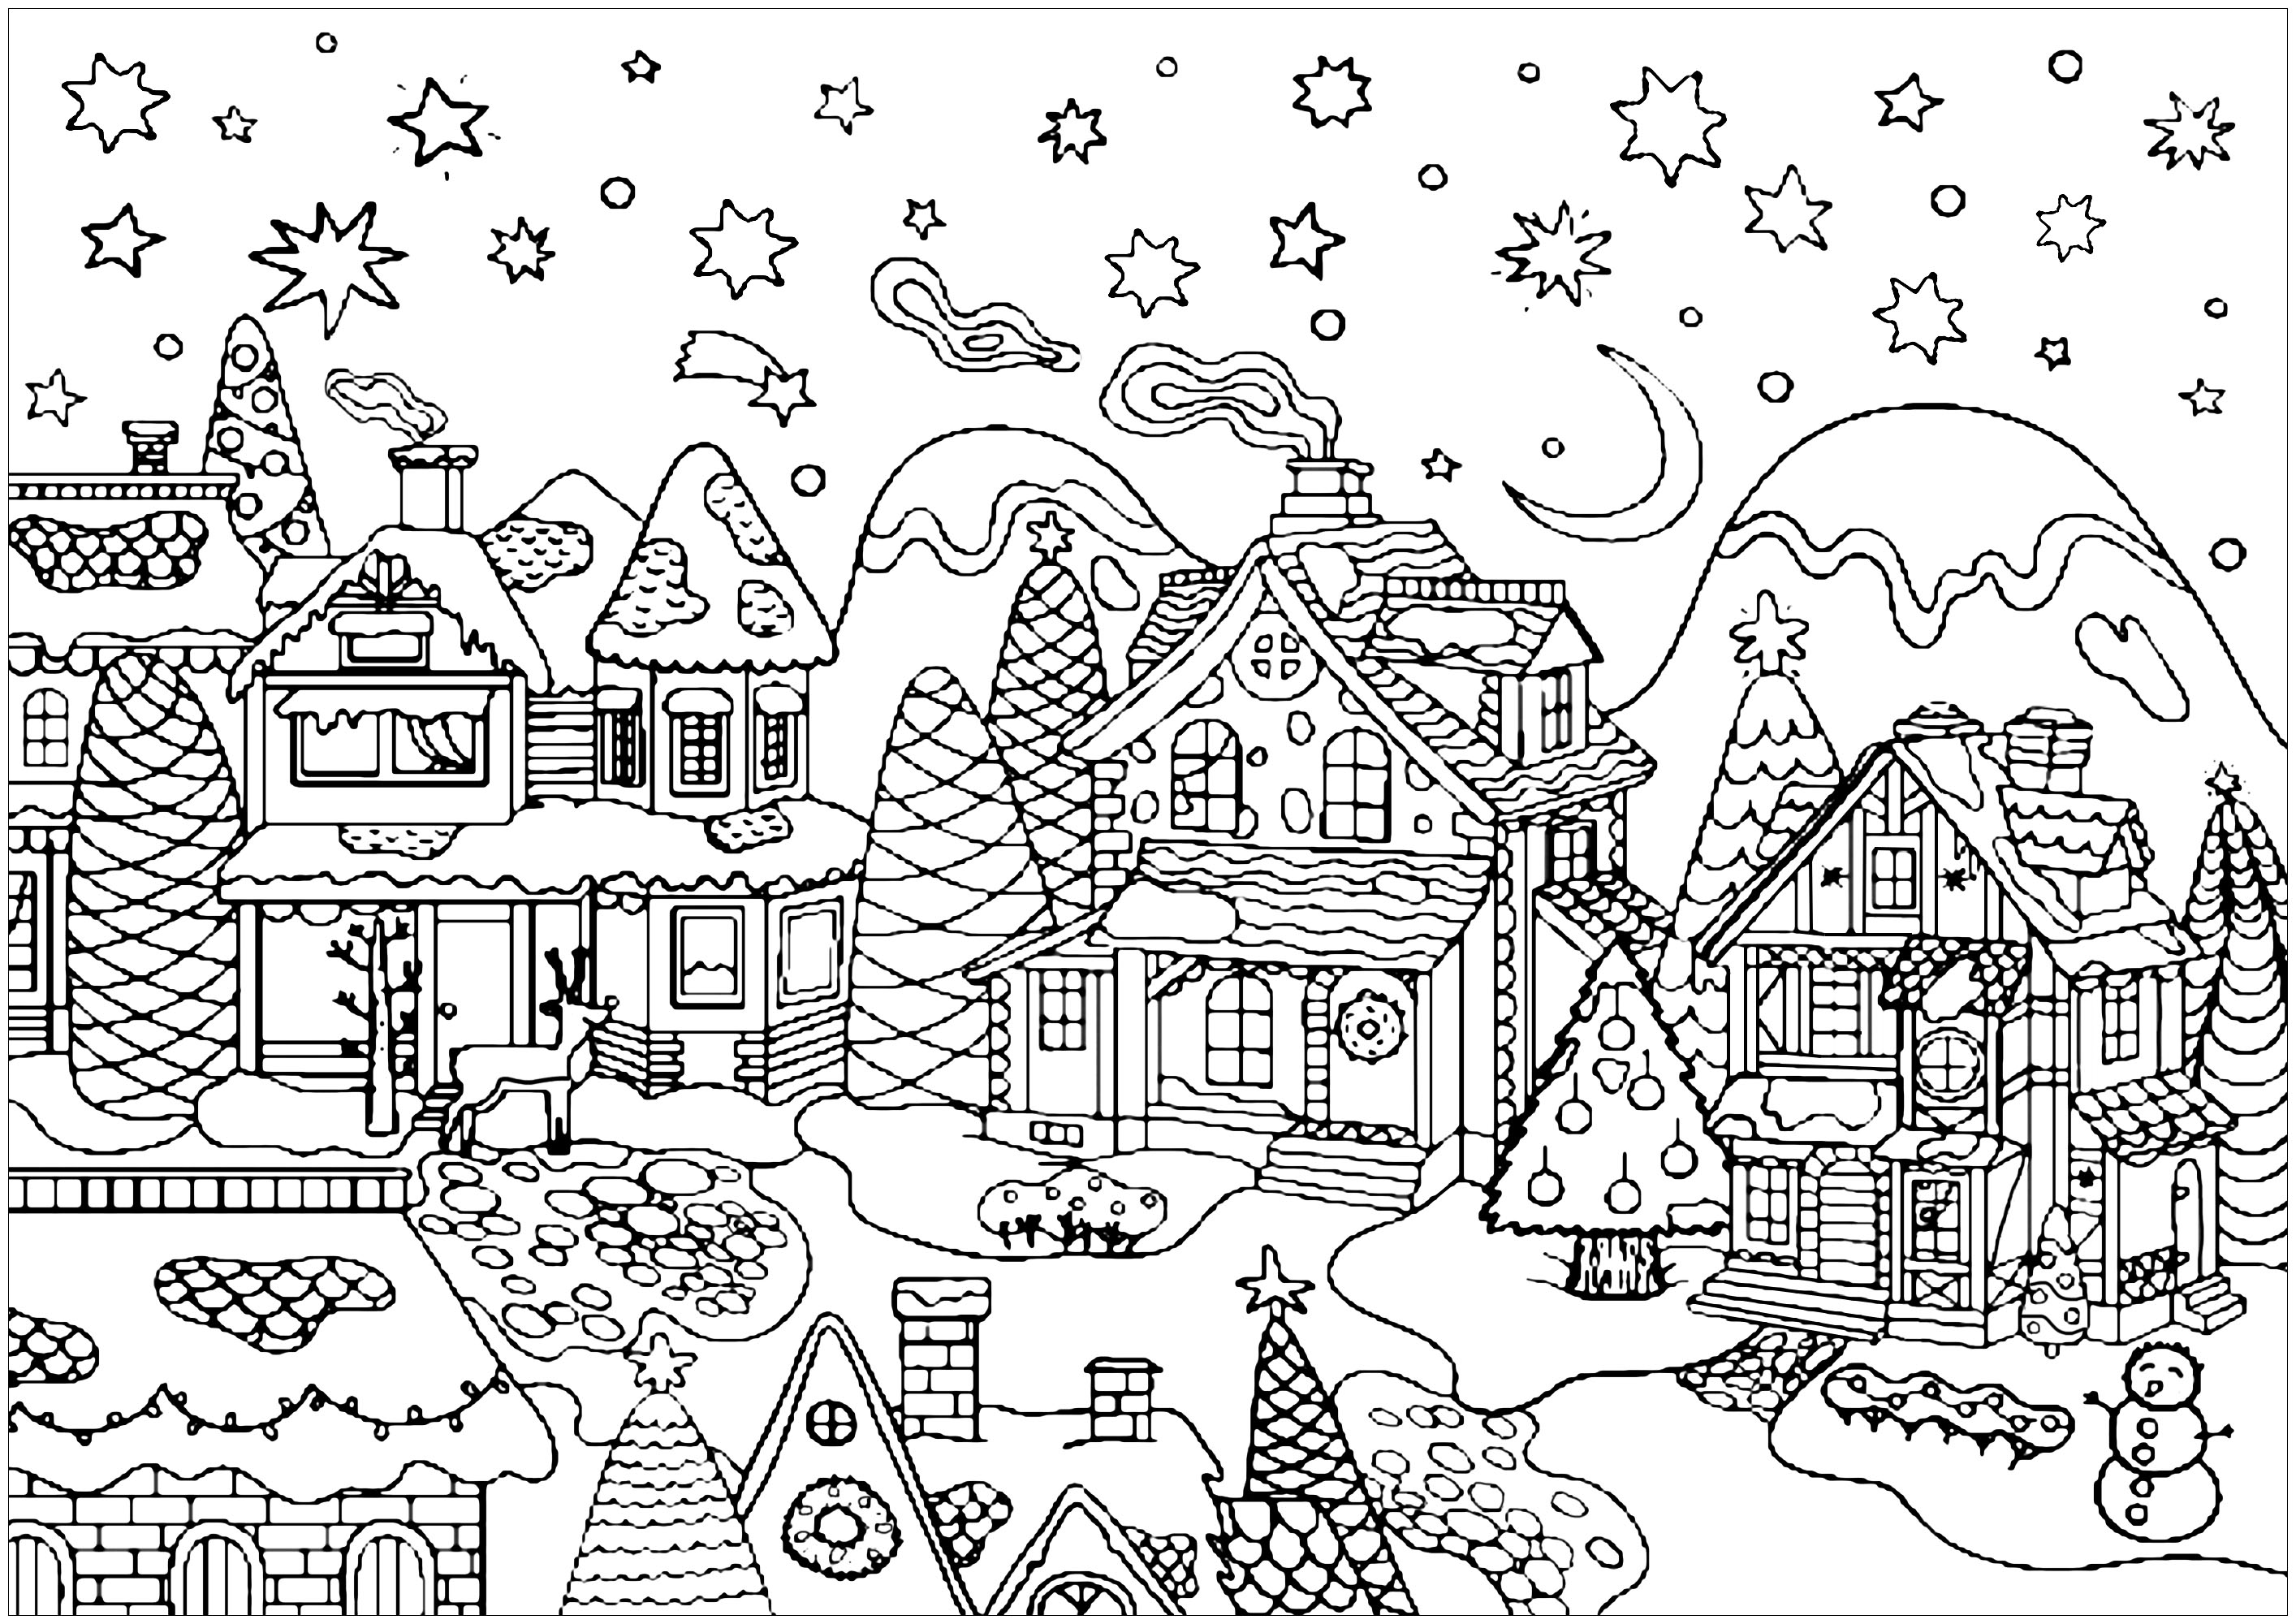 Färbe all die schönen Häuser dieses niedlichen verschneiten Dorfes, das bereit ist, Weihnachten zu feiern